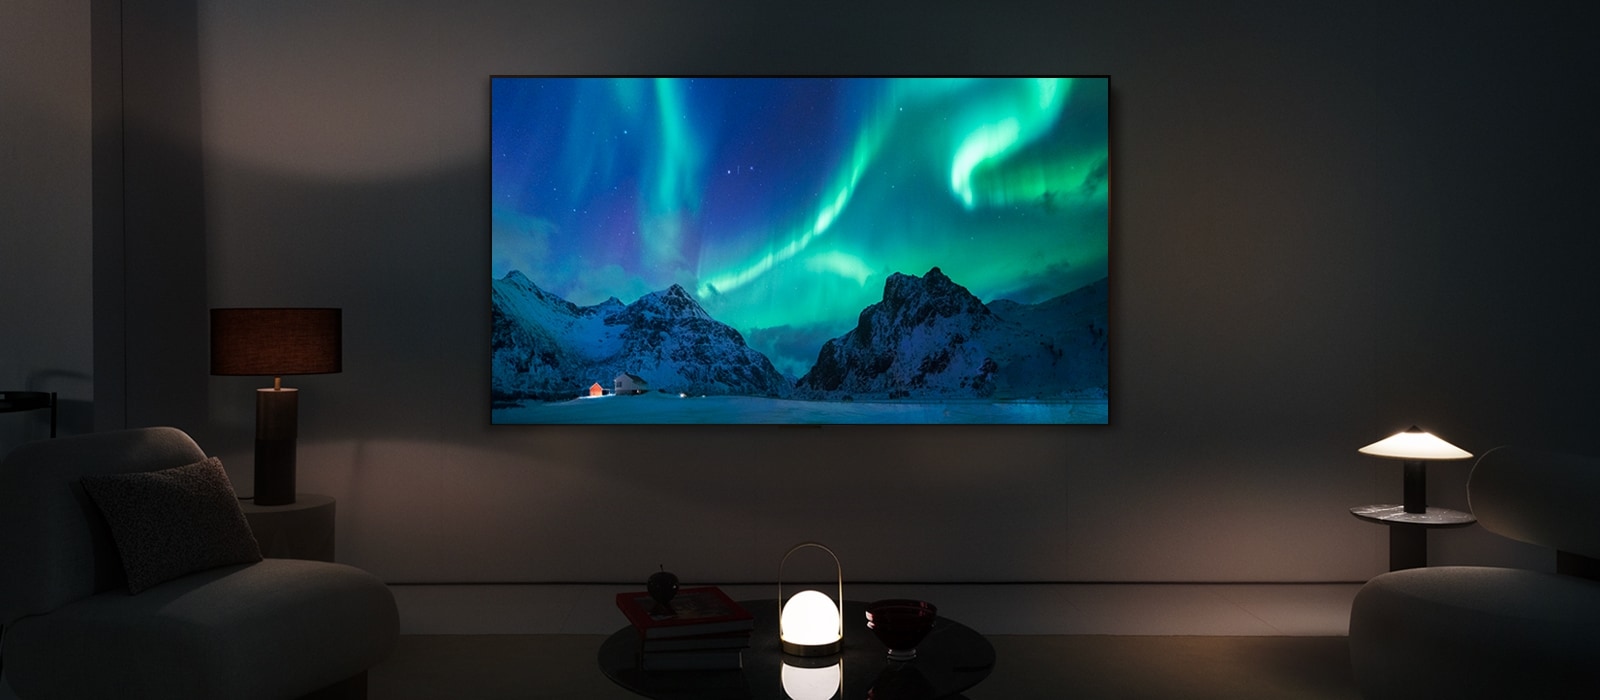 LG OLED TV trong không gian sống hiện đại vào ban đêm. Hình ảnh màn hình cực quang được hiển thị với mức độ sáng lý tưởng.